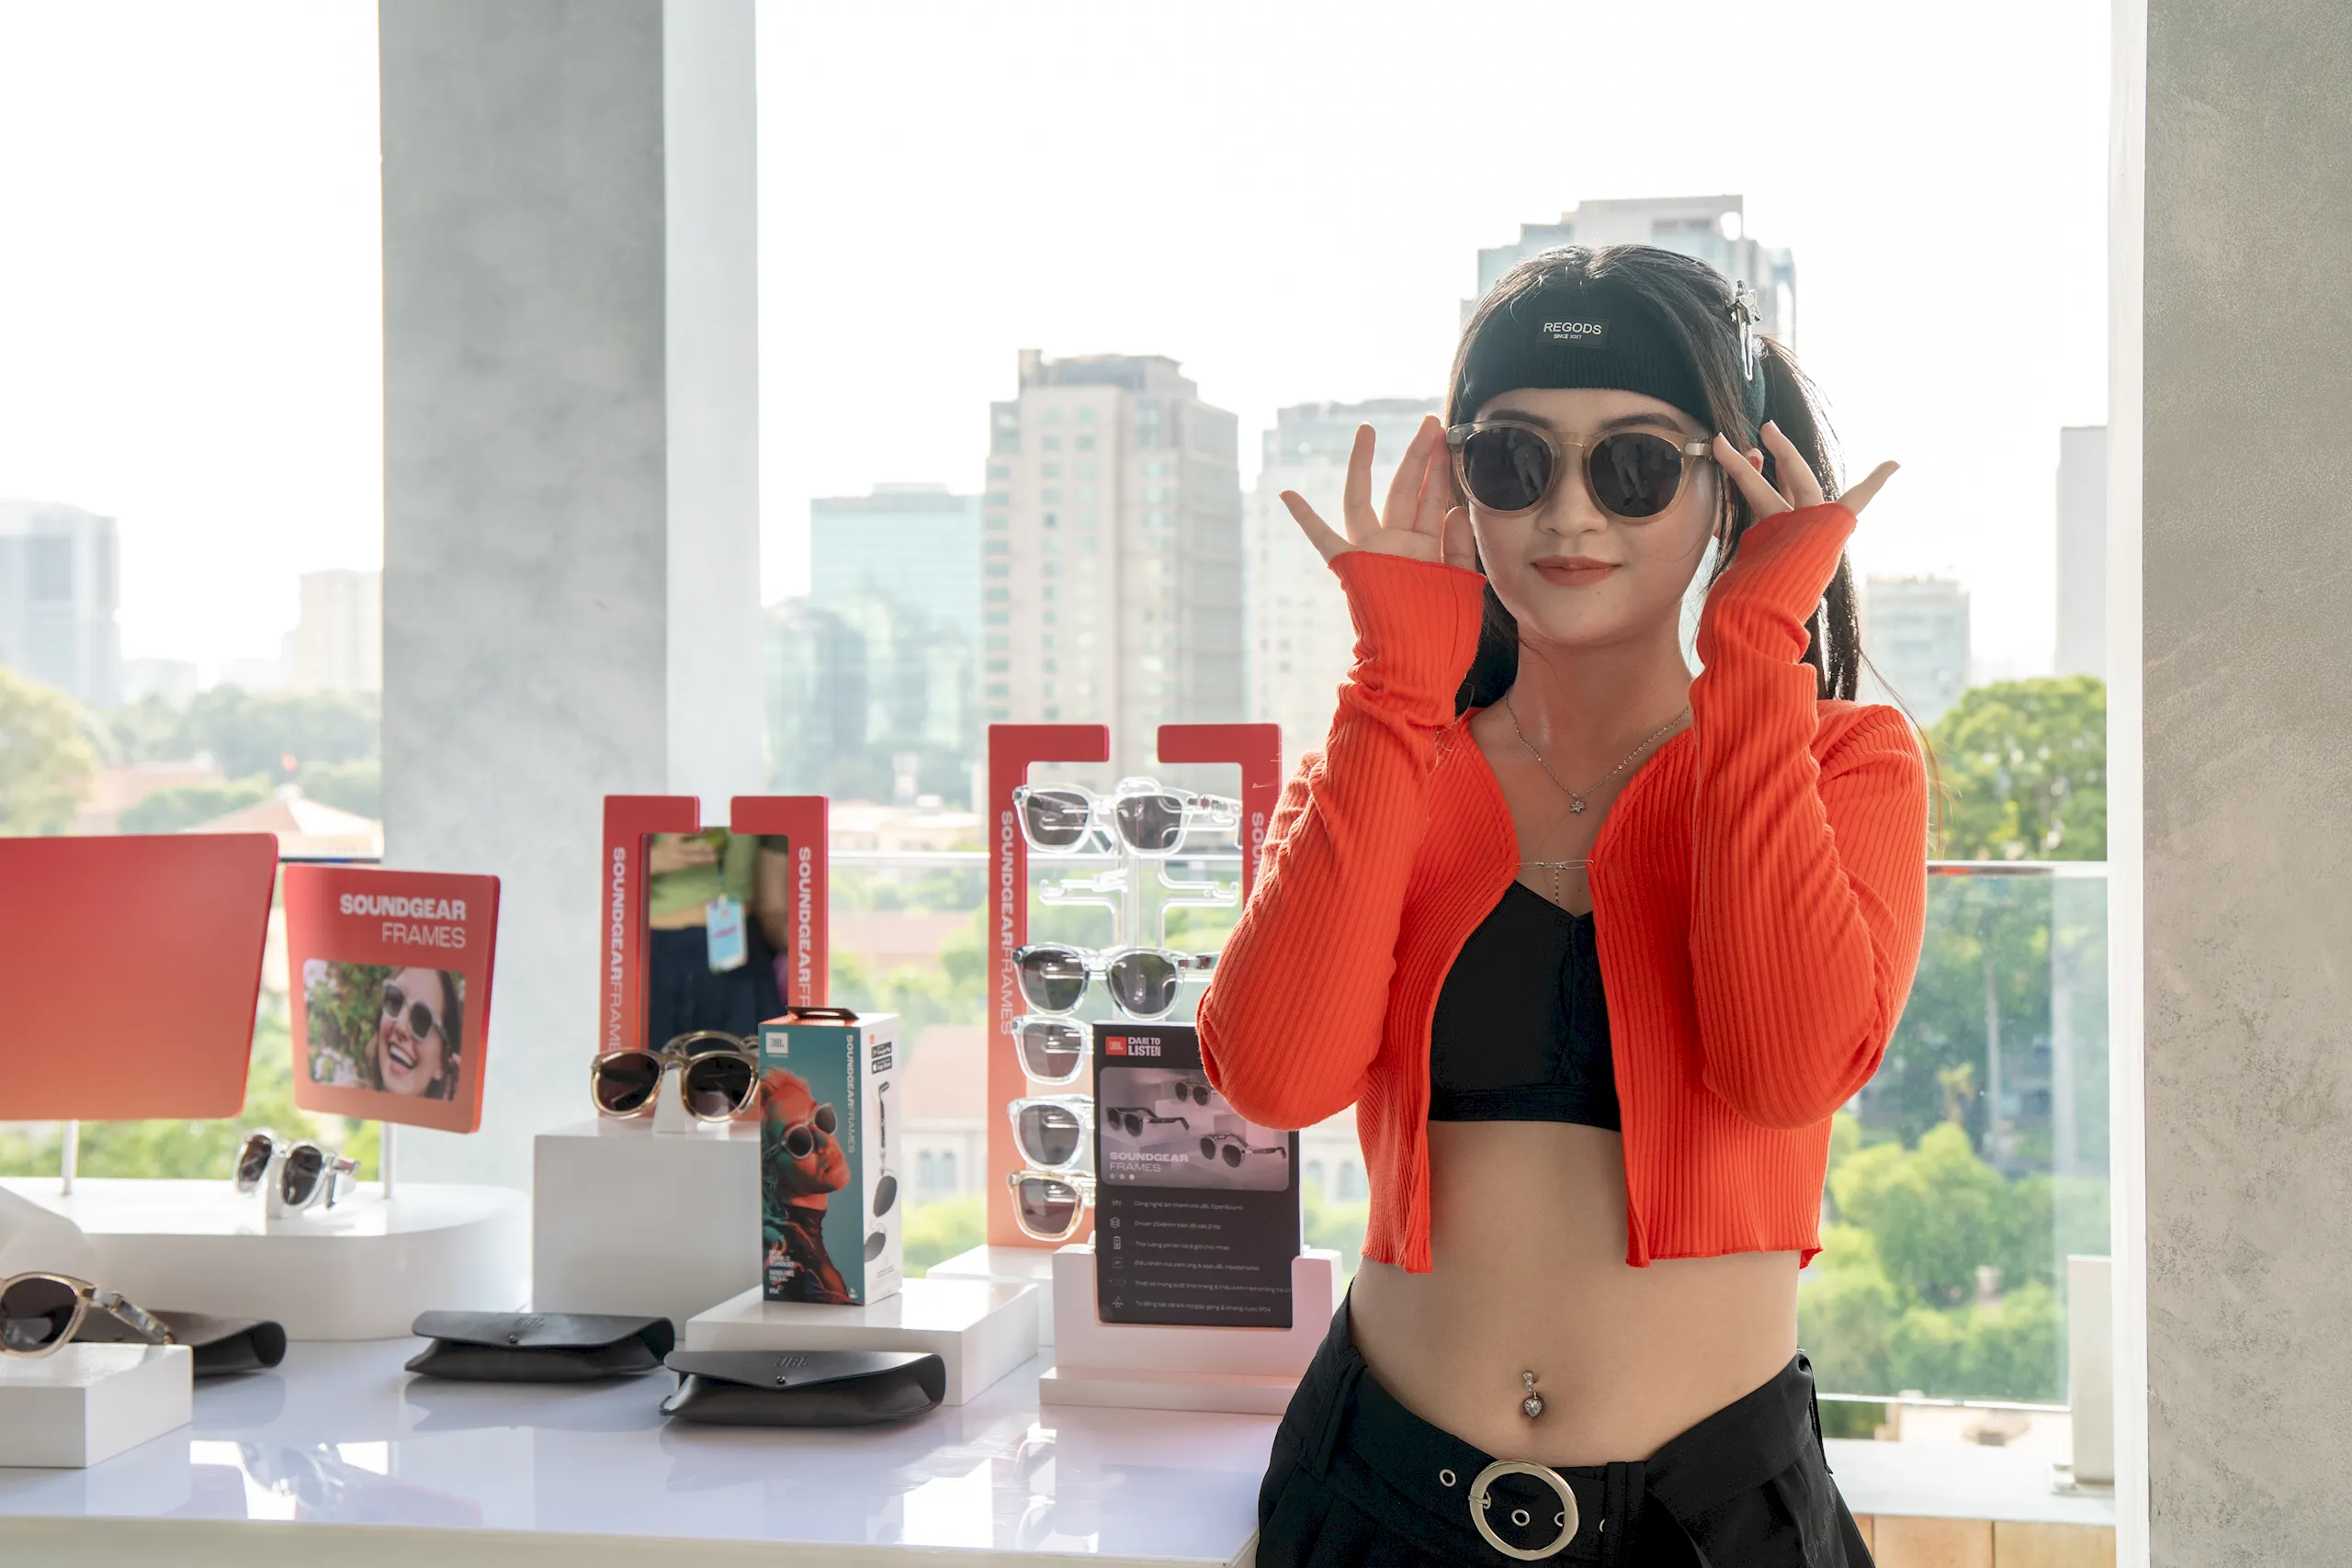 Kính nghe nhạc JBL Soundgear Frames ra mắt tại Việt Nam – Điểm giao thoa giữa Thời trang và Âm nhạc